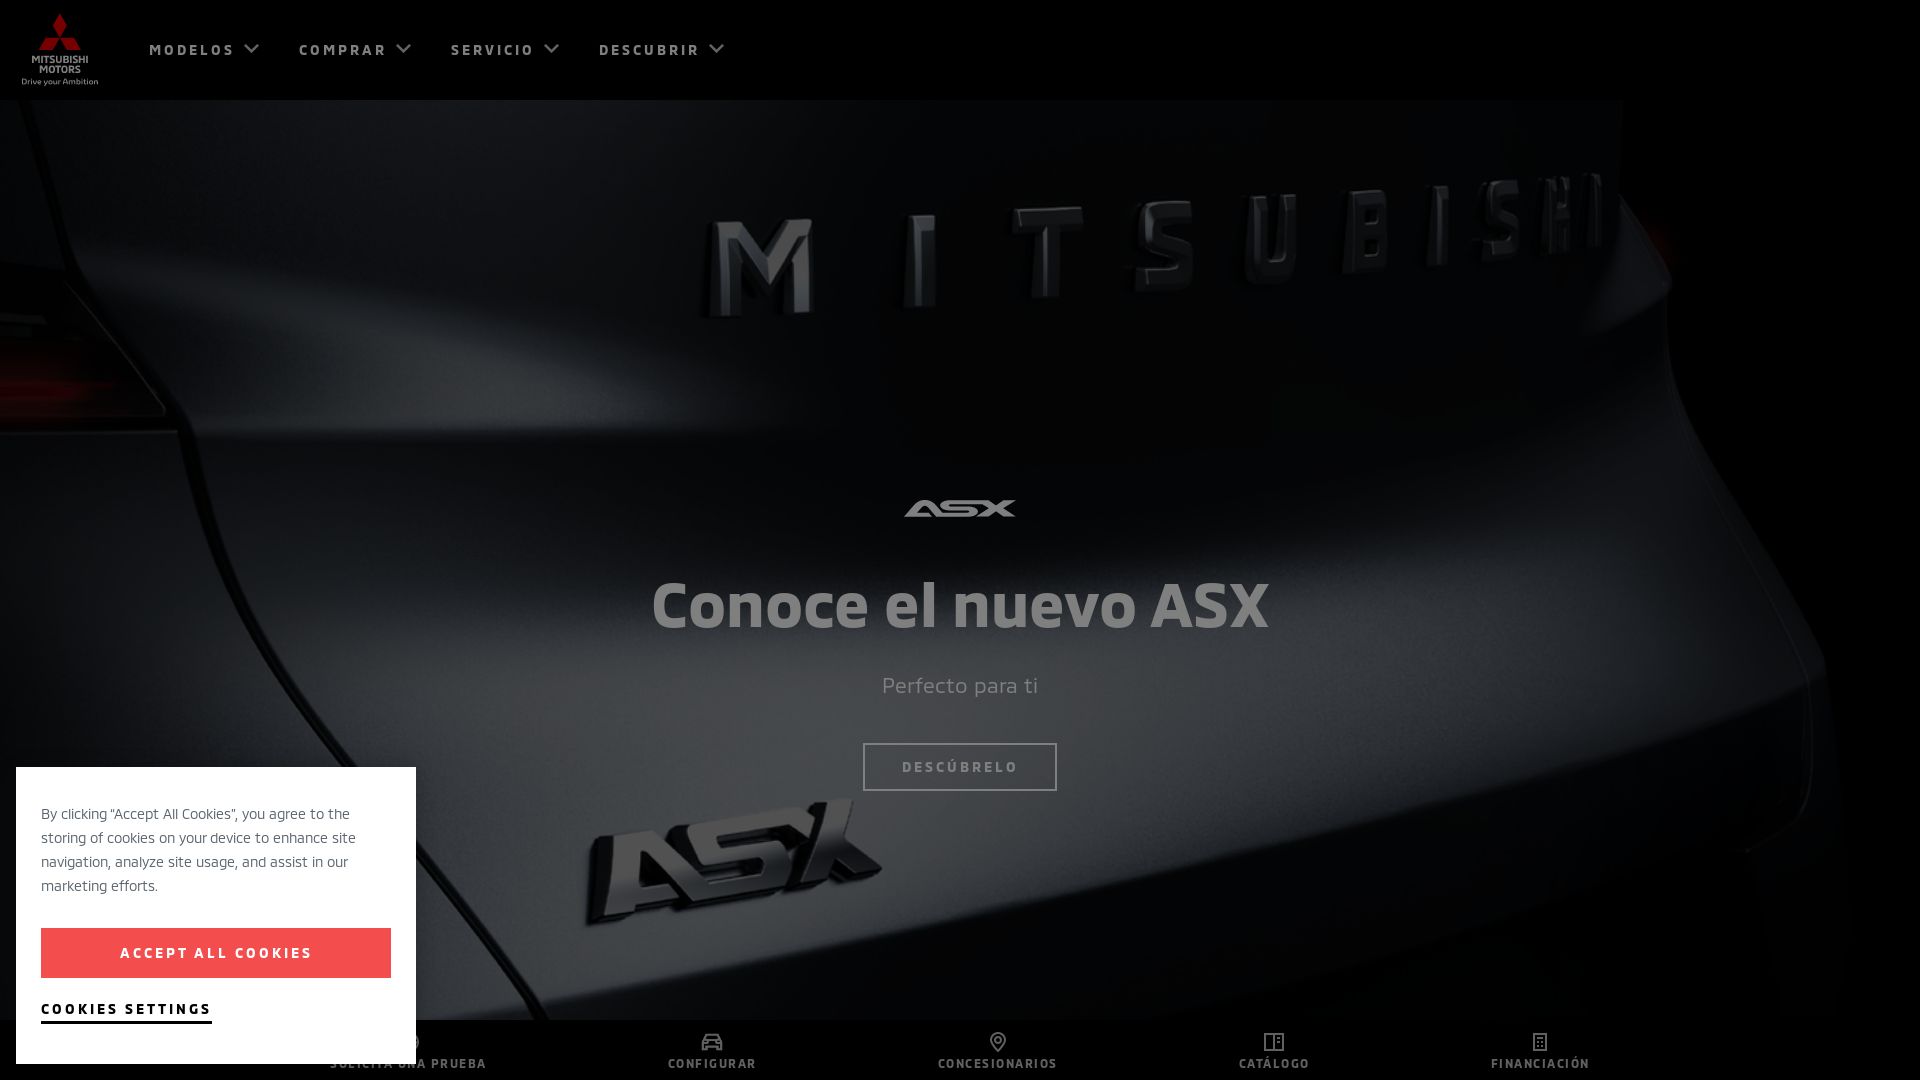 Estado web mitsubishi-motors.es está   ONLINE